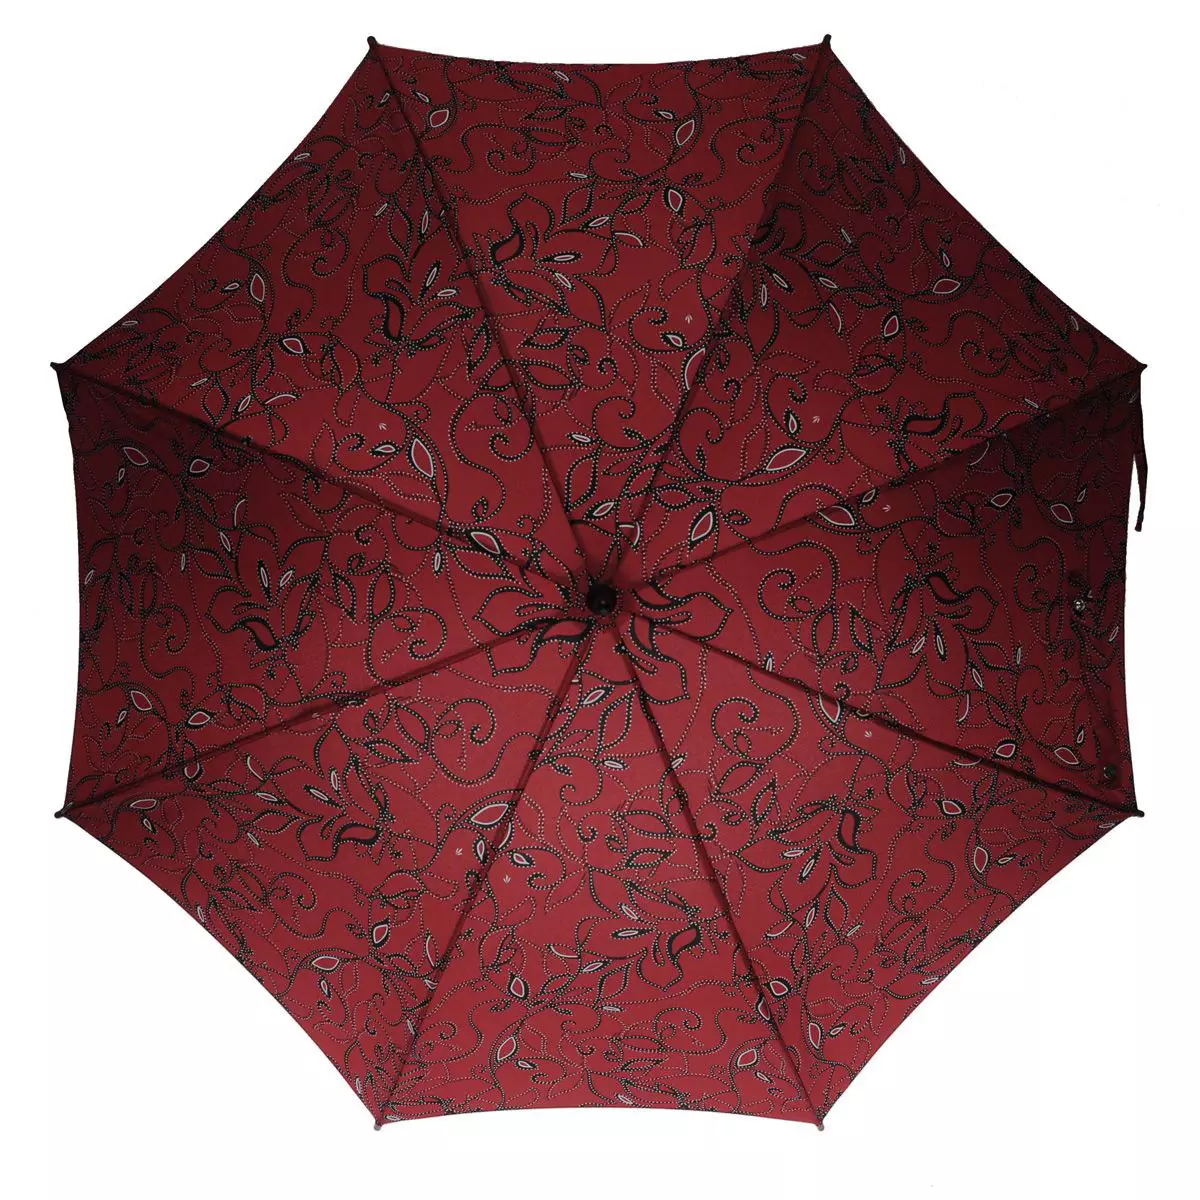 Fulton Umbrellas (53 fotos): skaaimerken fan modellen en resinsjes oer Umbrellas 15229_40